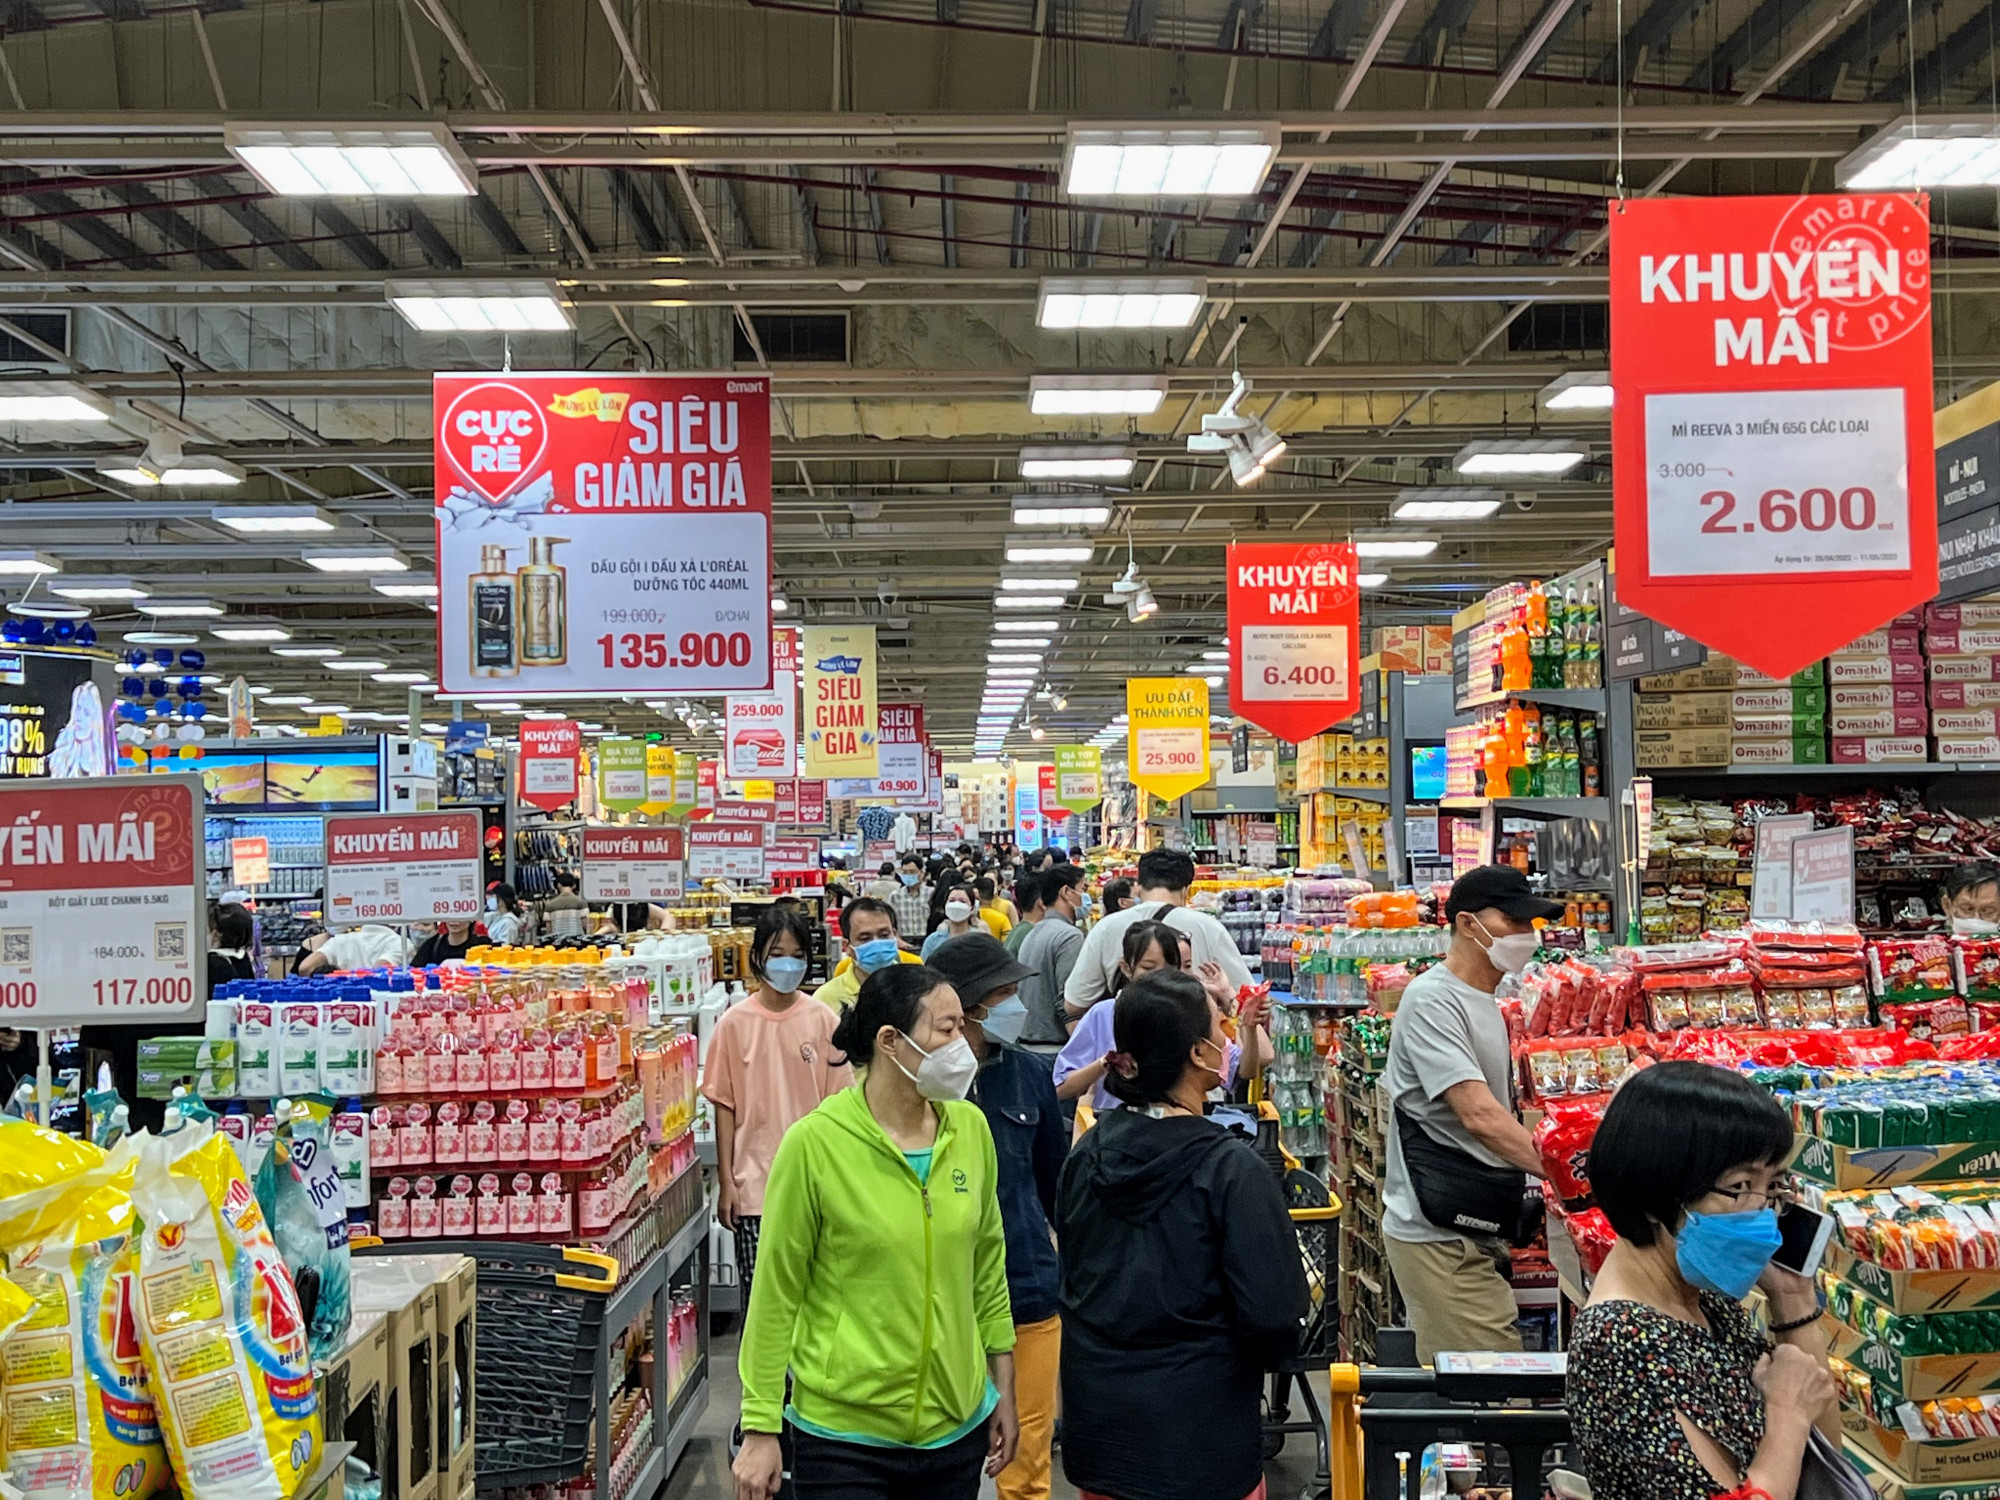 Khu vực tập trung đông quầy hàng khuyến mãi tại siêu thị Emart.